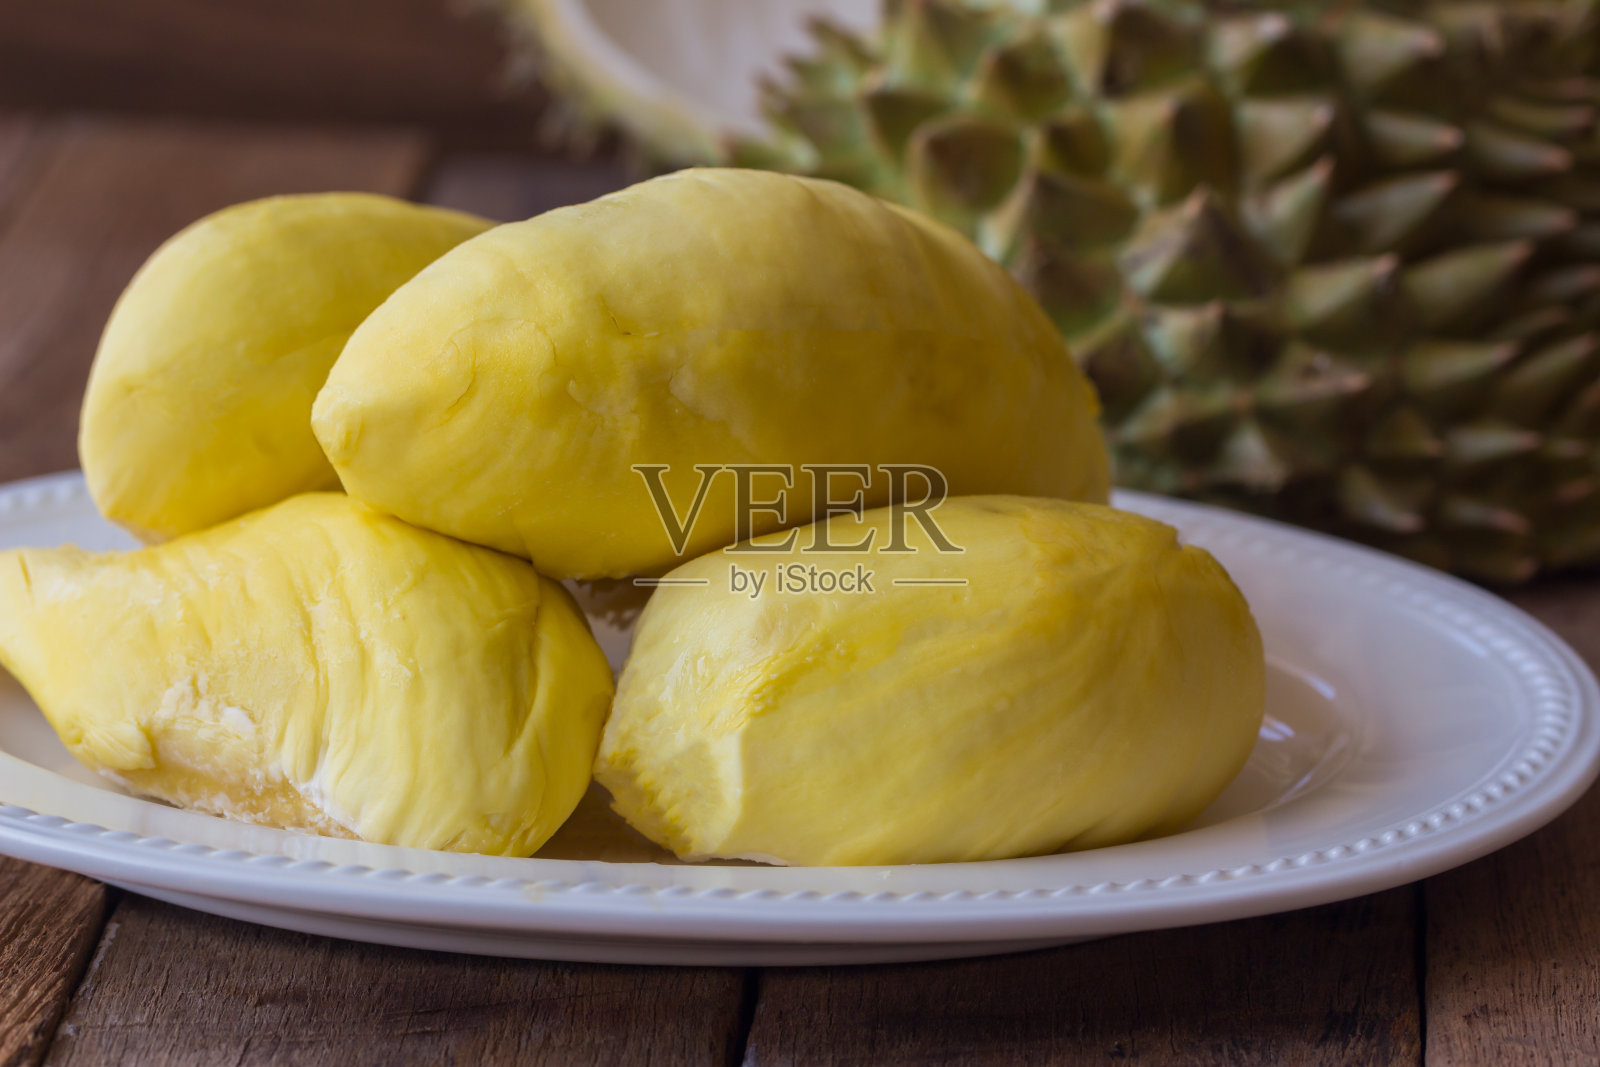 泰国传统水果:泰国水果之王榴莲放在白色盘子上，放在质朴的木桌上。榴莲是热带水果，很好吃，很甜，很香。成熟的榴莲呈金黄色。照片摄影图片